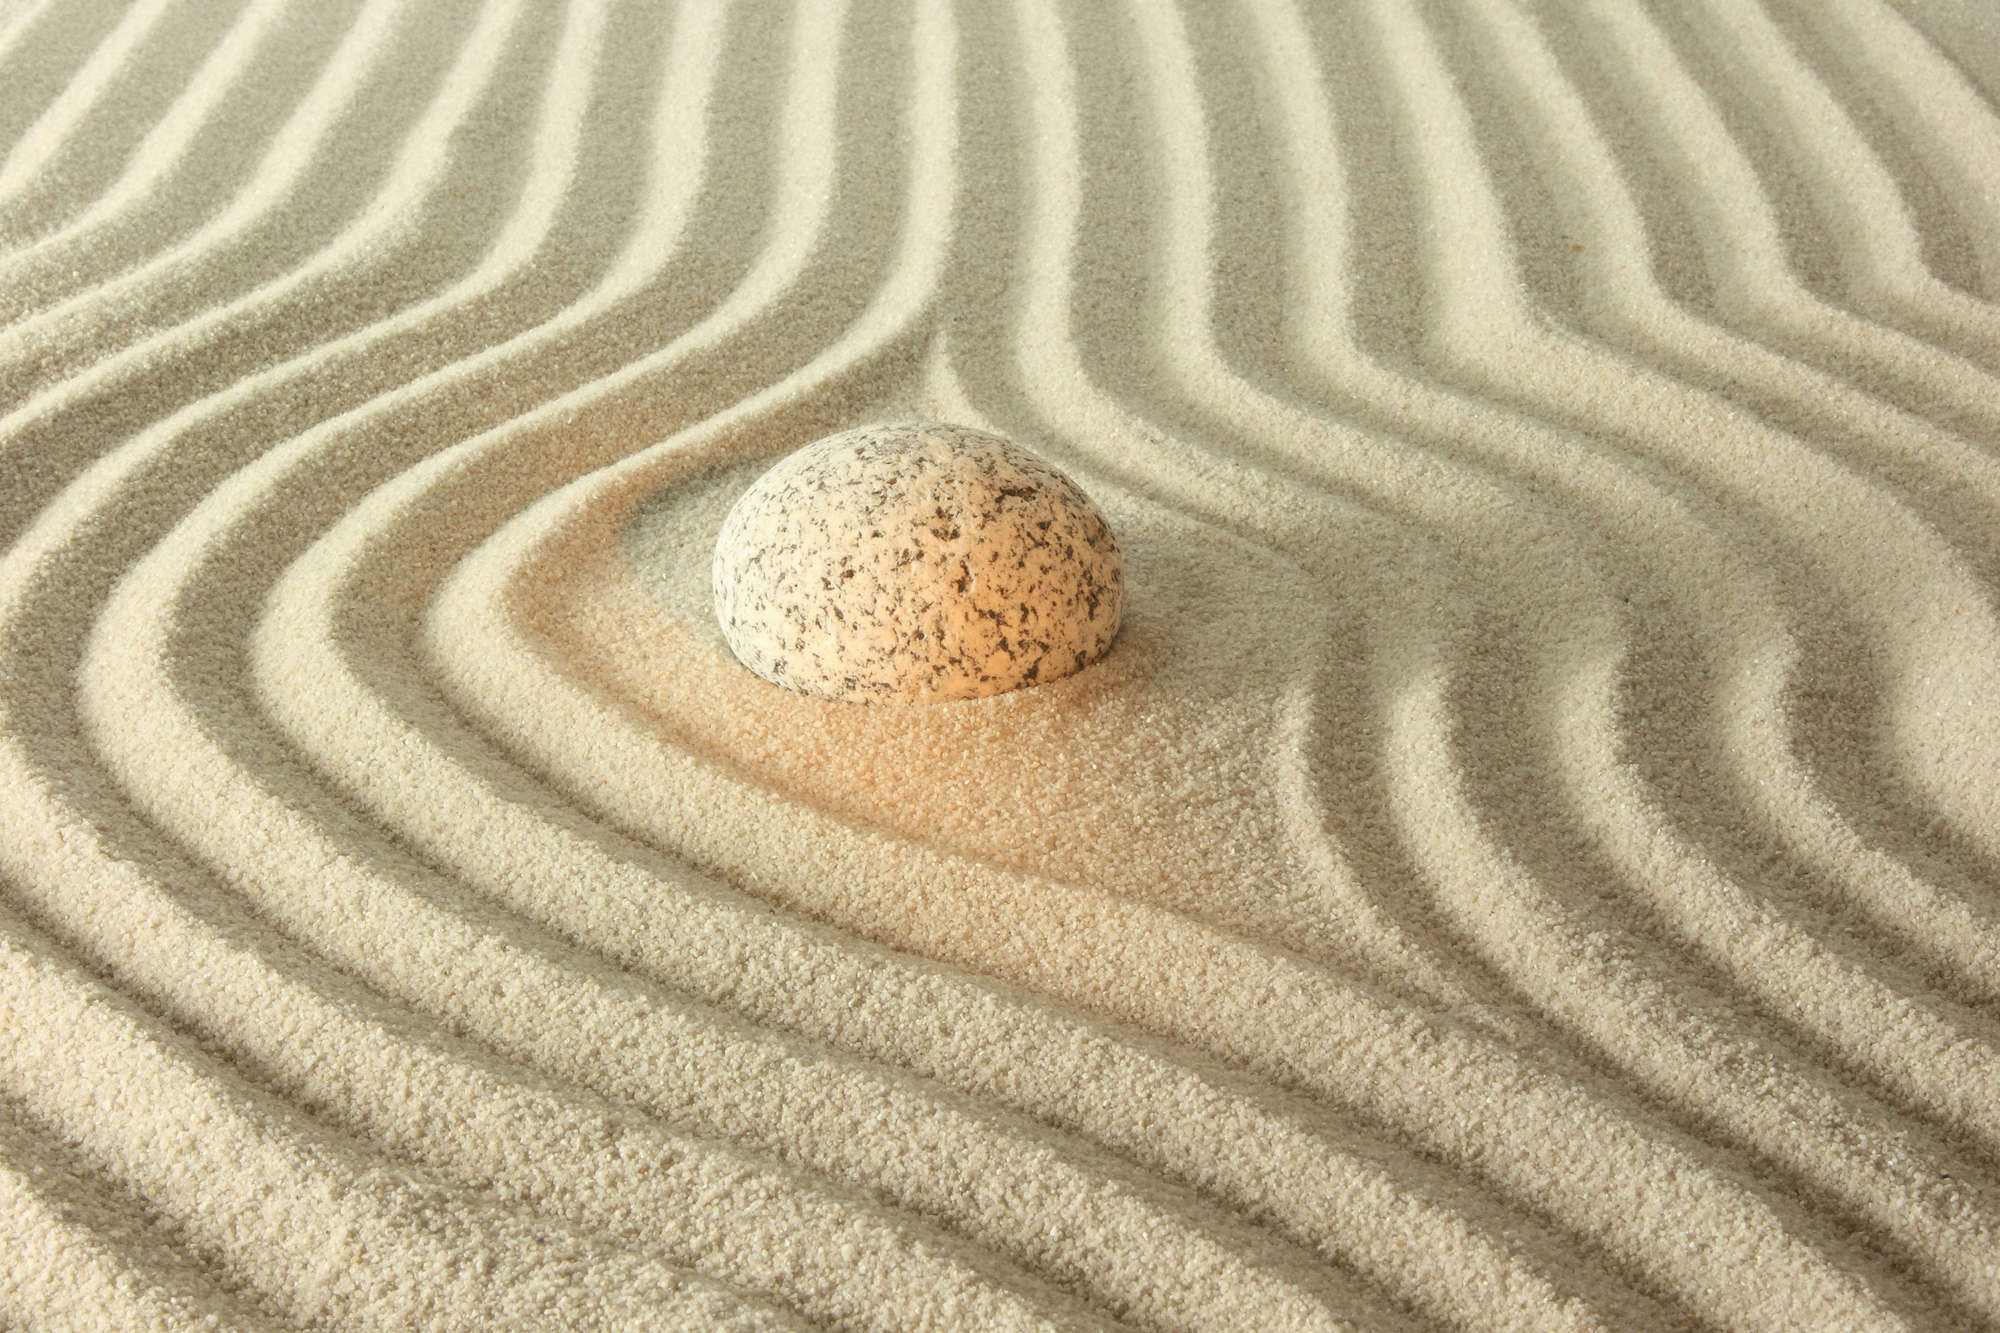             Spa Fototapete gelber Stein in geriffeltem Sand auf Matt Glattvlies
        